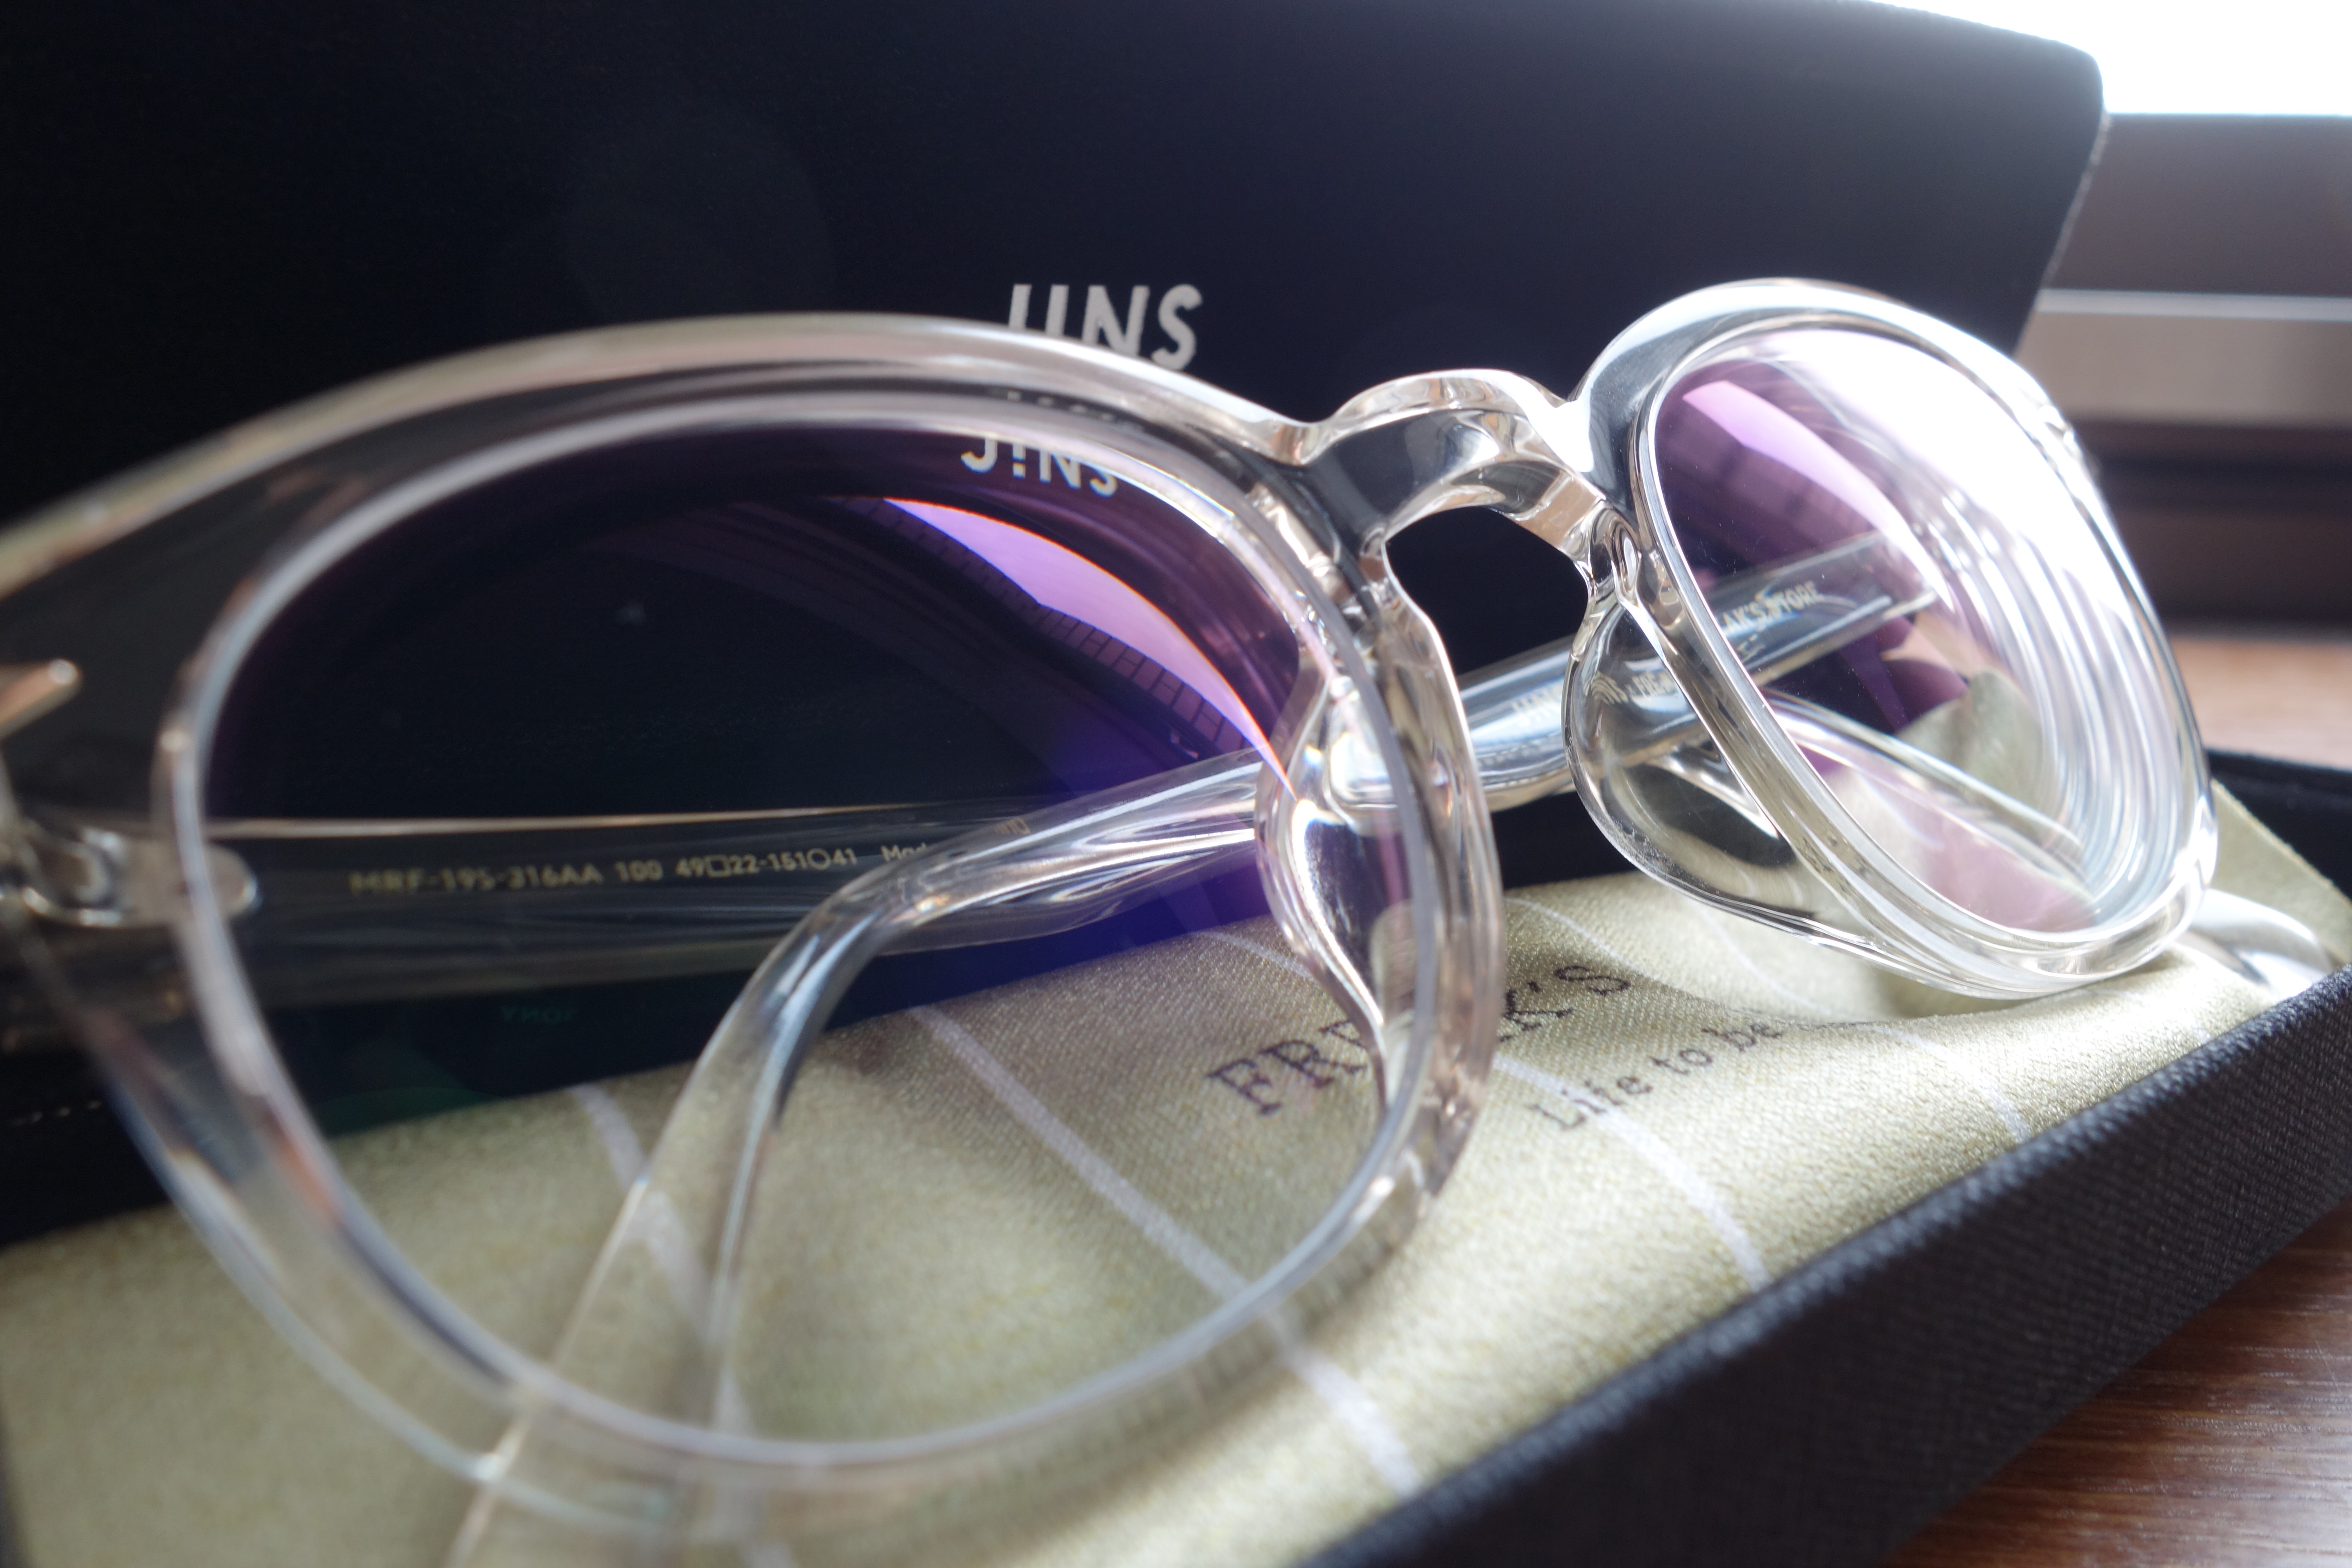 JINS×FREAK'S STOREのコラボ眼鏡は、ワンランク上のおしゃれ眼鏡